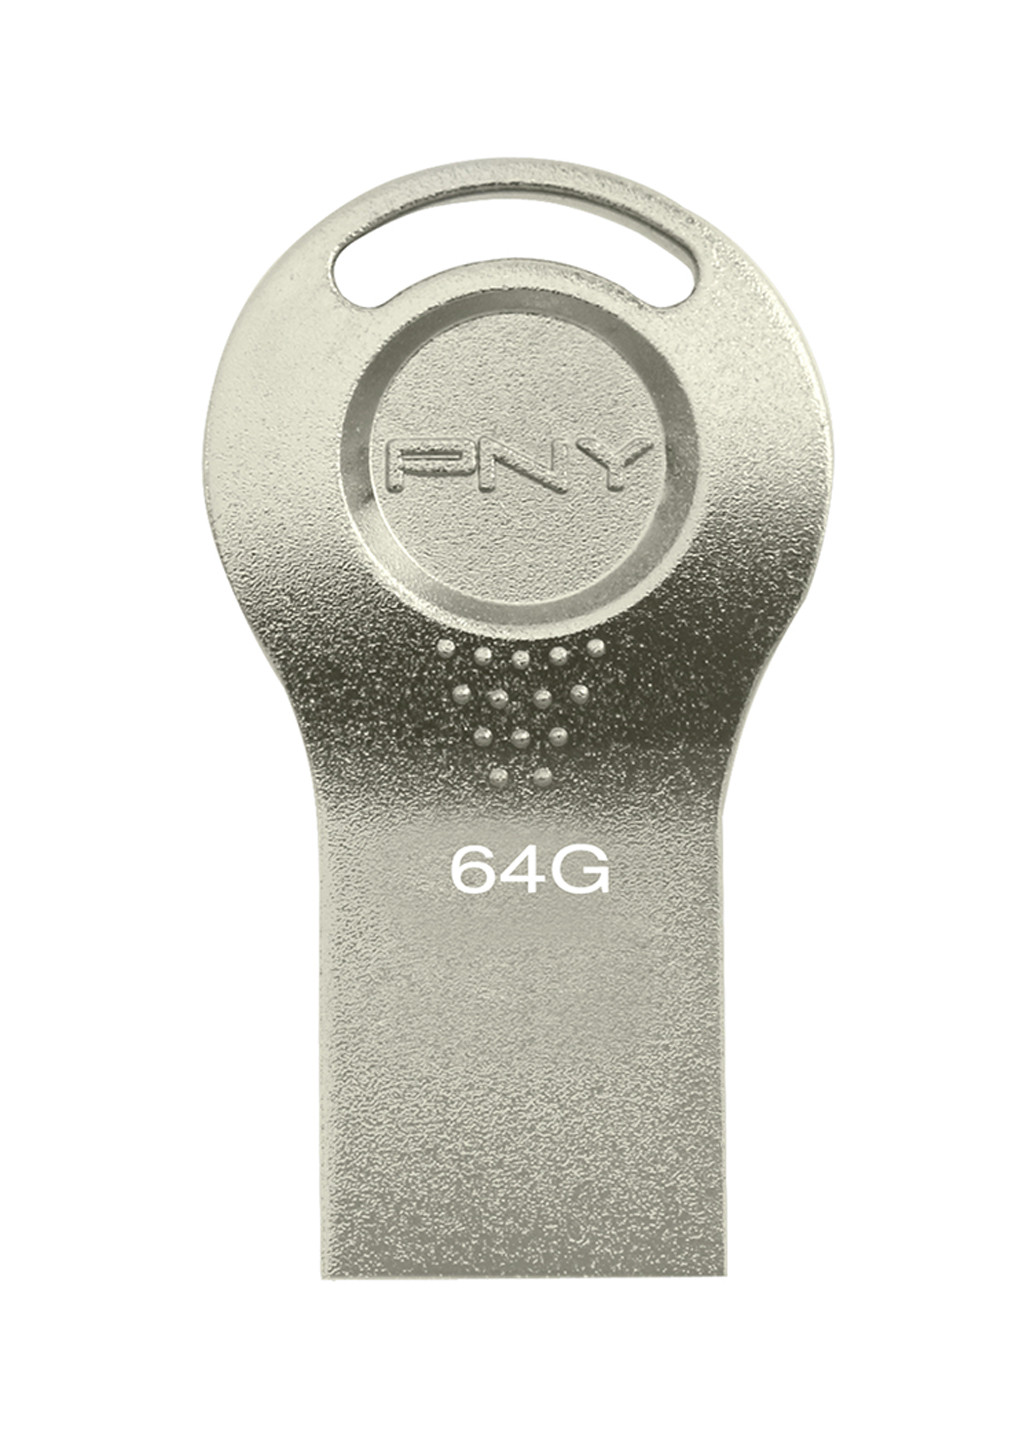 Флеш пам'ять USB Attache I 64GB Durable Metal Silver (FDI64GATTI-EF) PNY флеш память usb pny attache i 64gb durable metal silver (fdi64gatti-ef) (135526997)